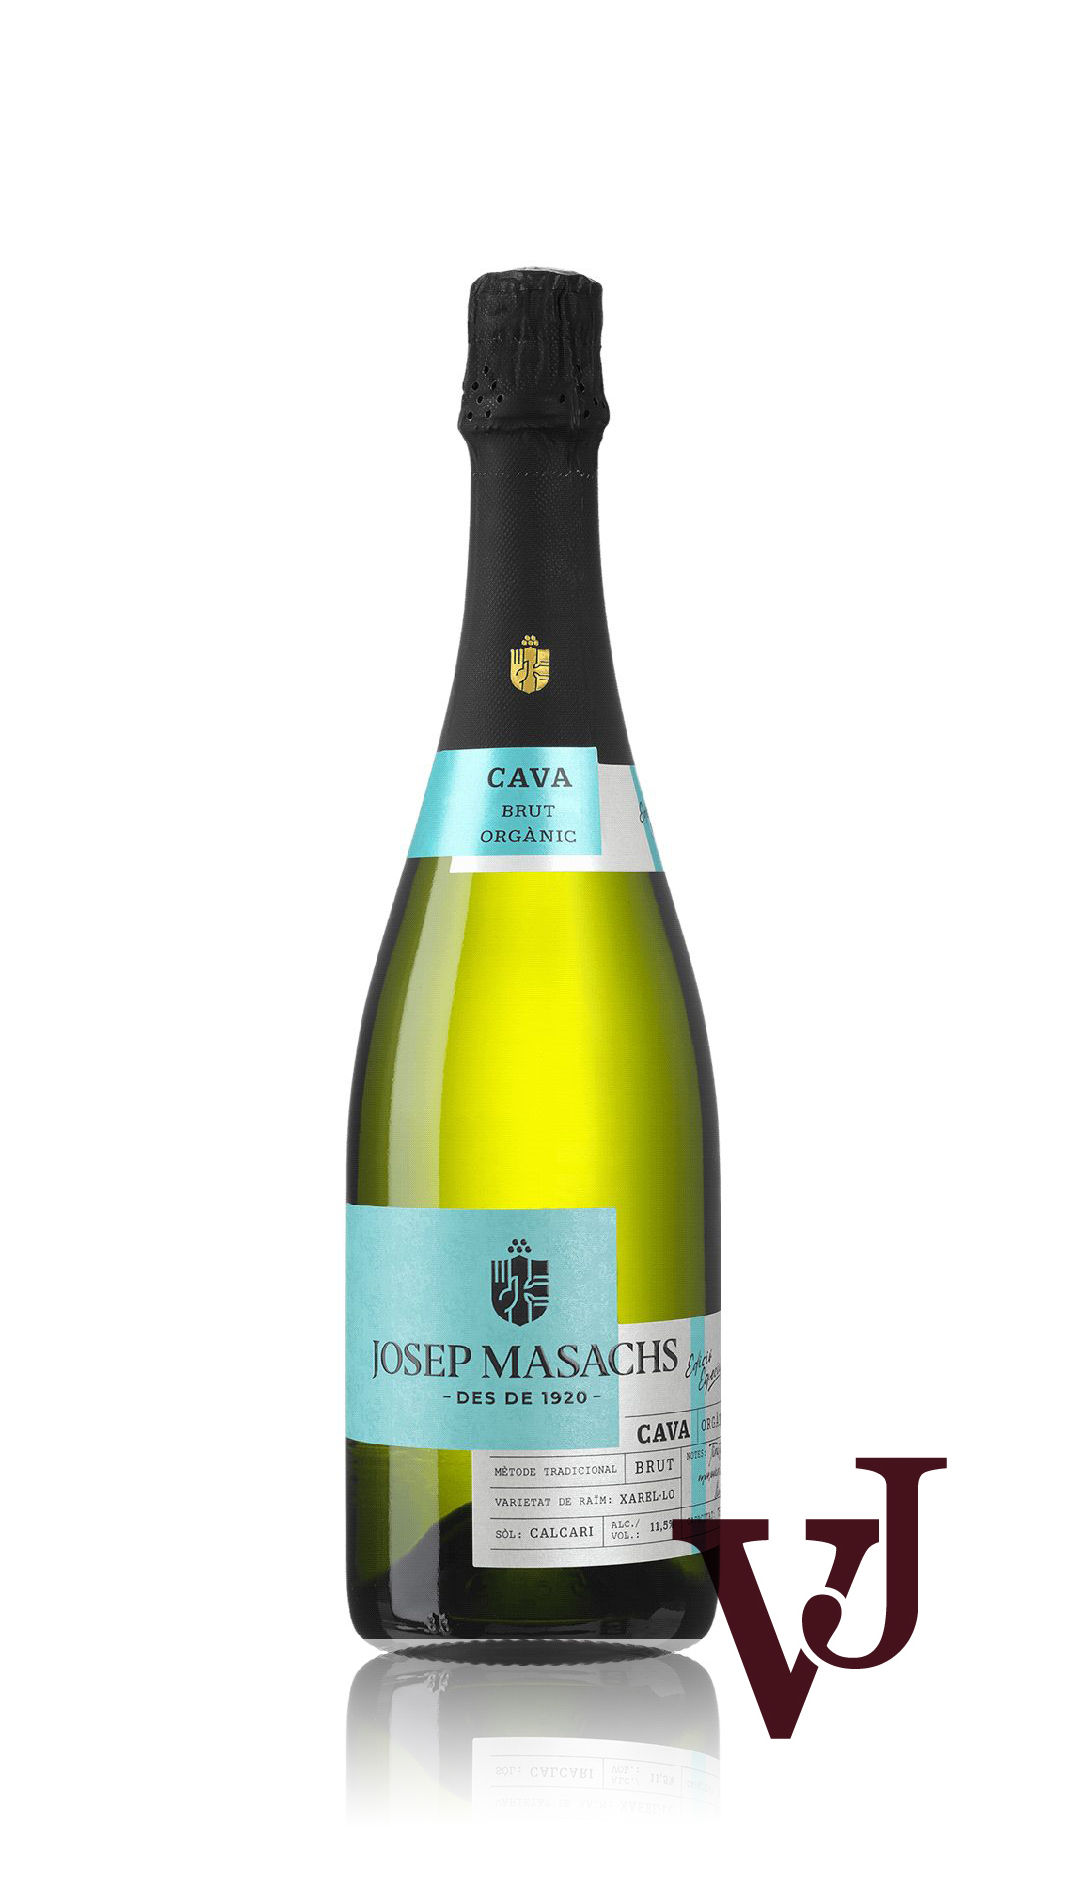 Mousserande Vin - Josep Masachs Cava artikel nummer 4156401 från producenten Josep Masachs från området Spanien